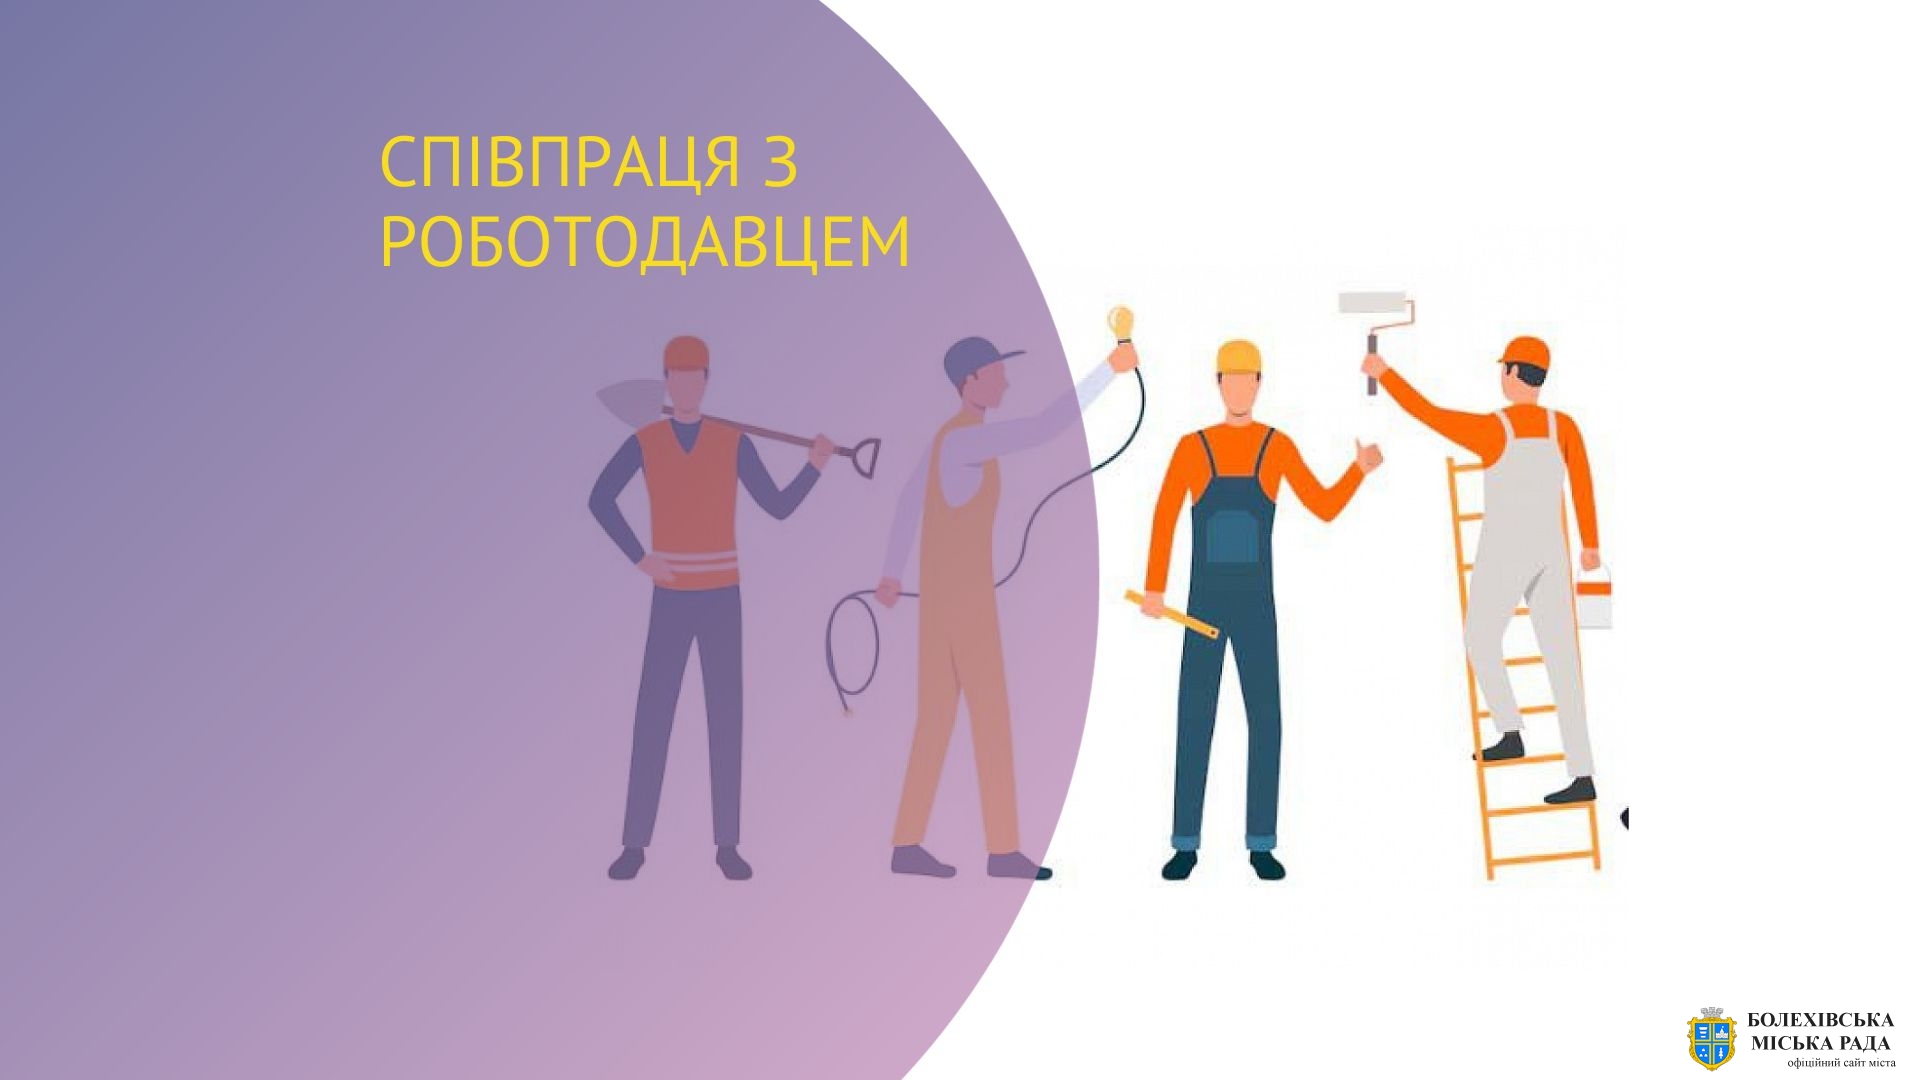 Від початку року на Івано-Франківщині до виконання суспільно корисних робіт вже залучено 85 осіб з числа зареєстрованих безробітних